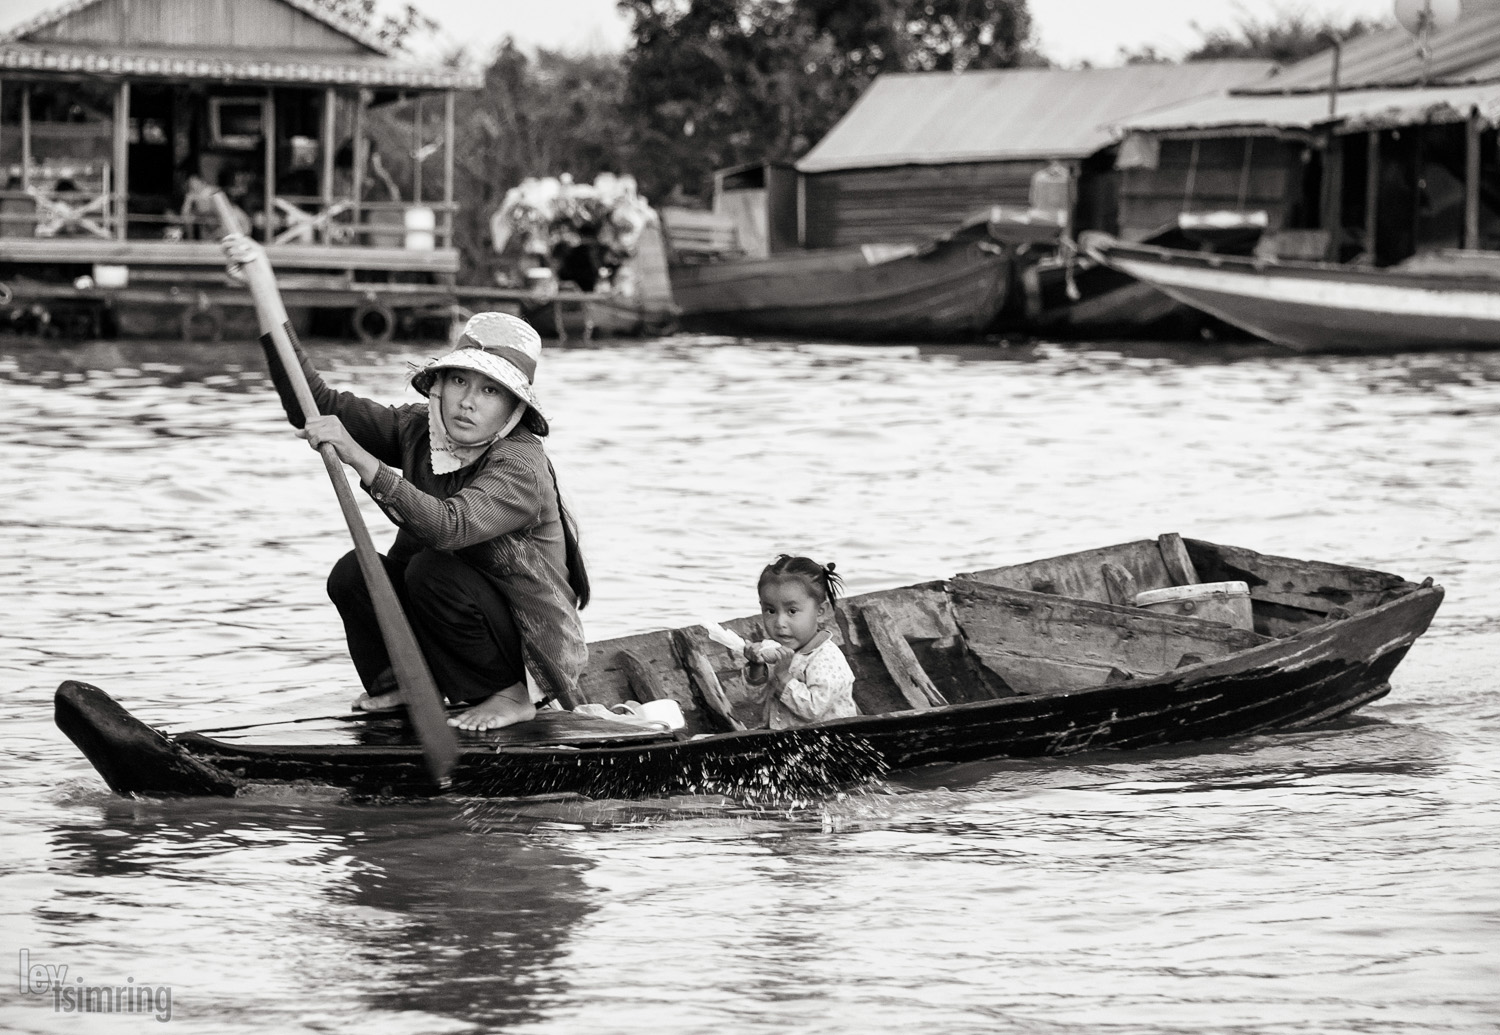 Tonle Sap lake, Cambodia (2012)